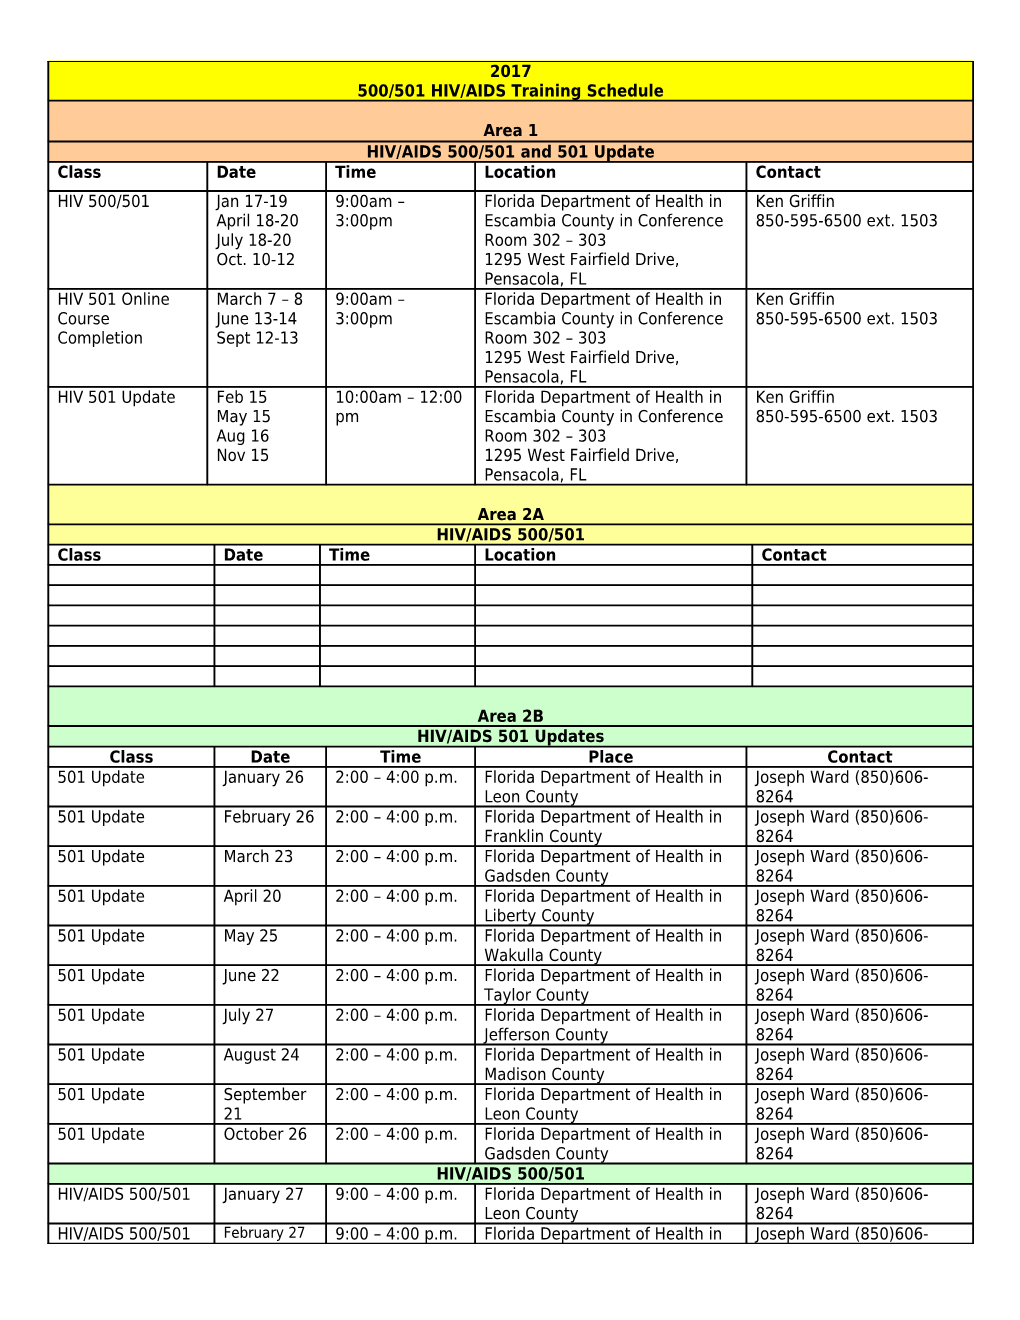 500/501 HIV Training Schedule